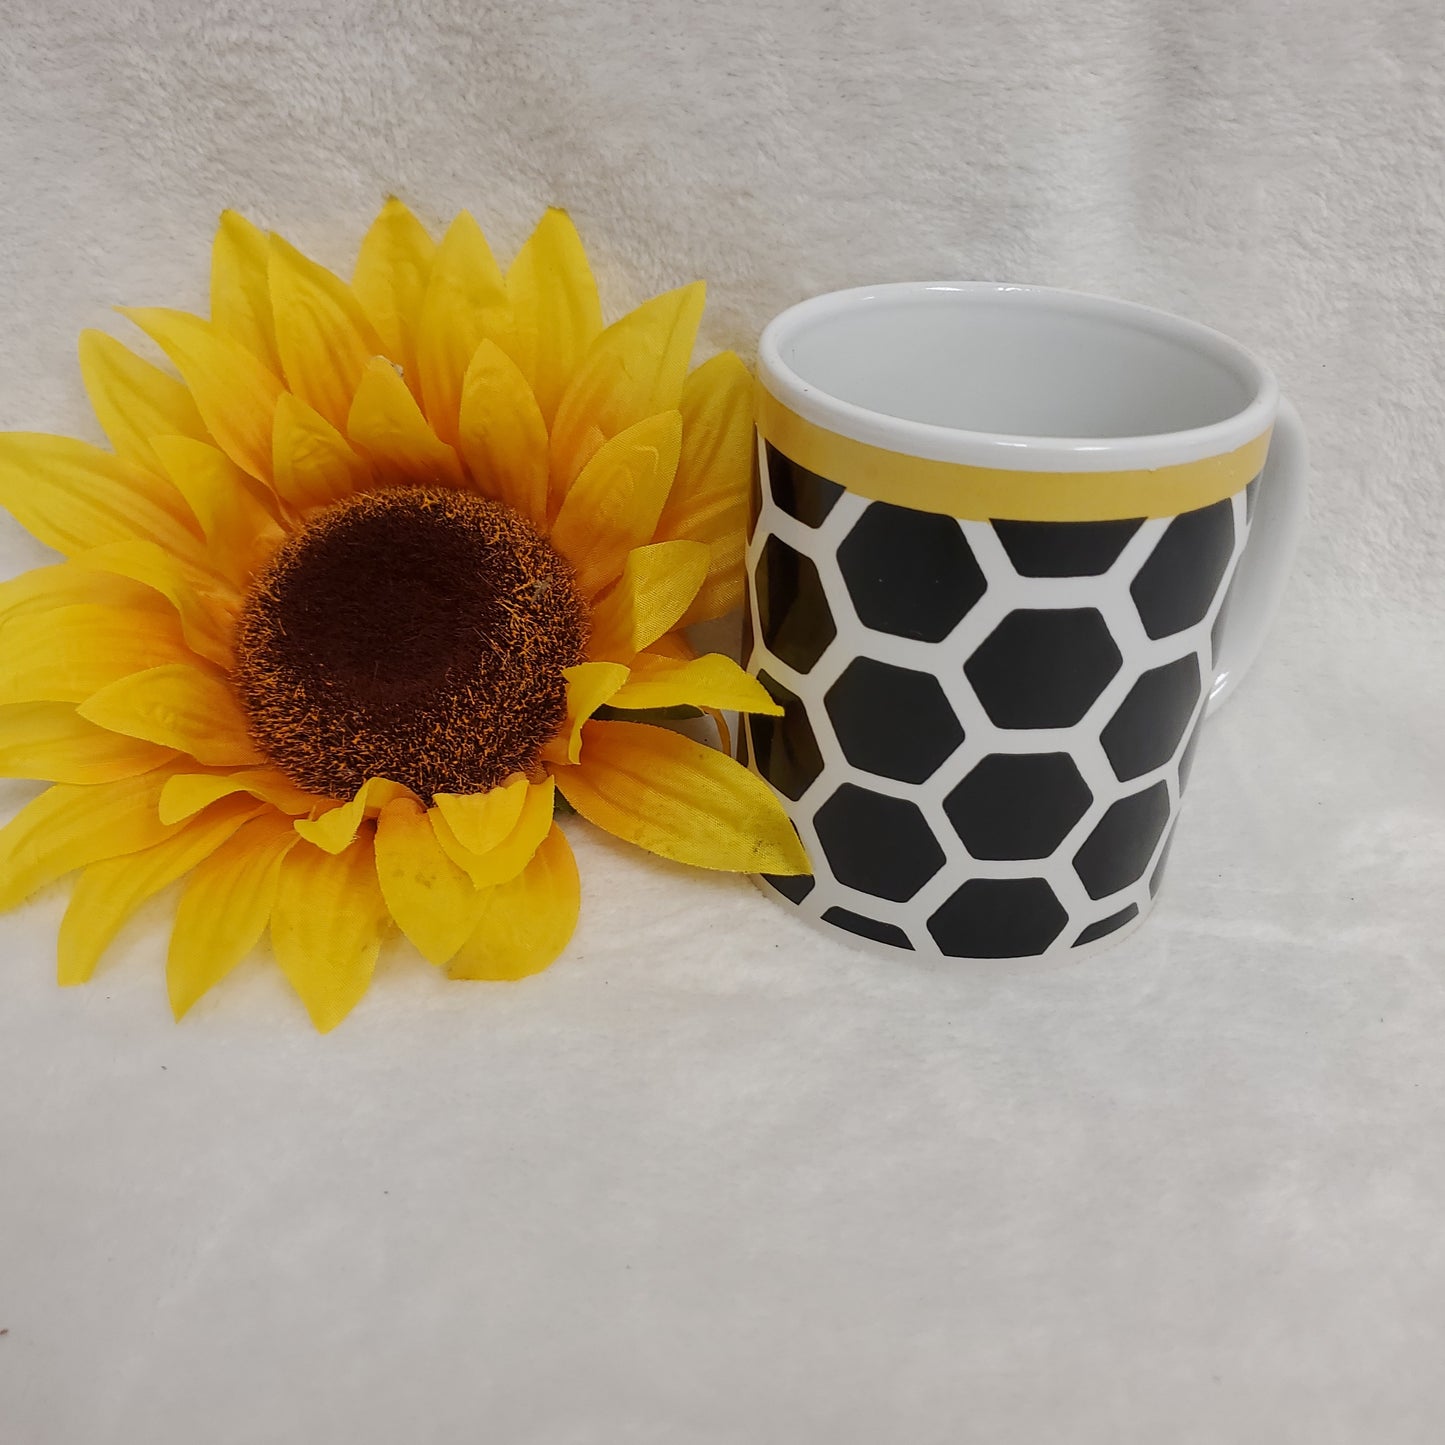 Beehive Design Coffee Mug and Plate